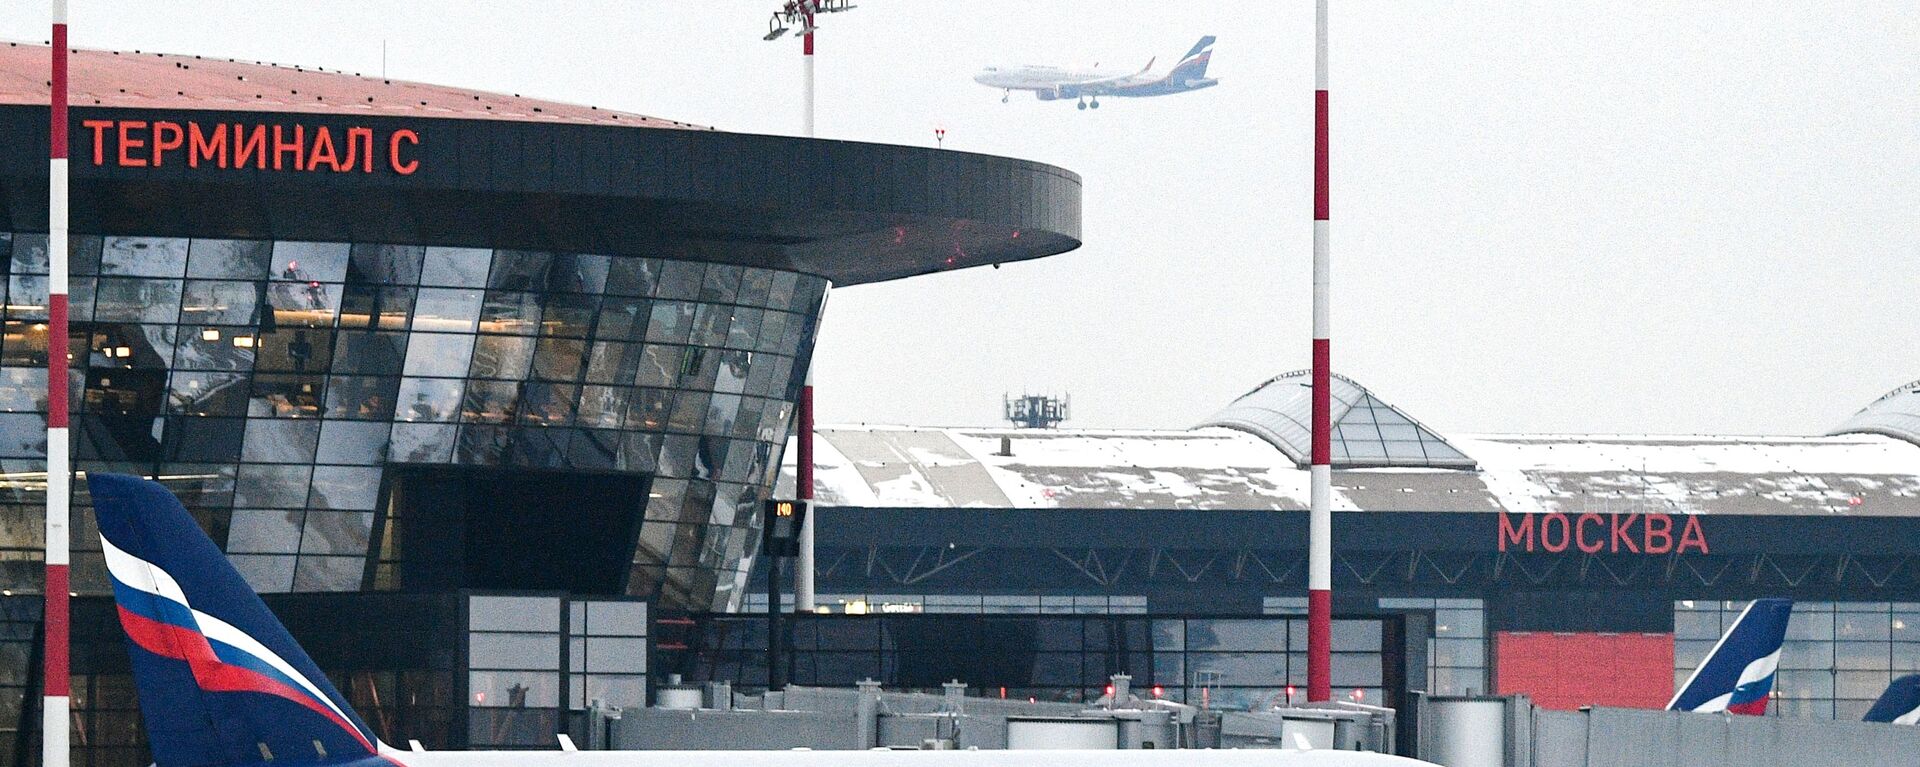 مطار شيريمتيفو، الطيران الروسي آيروفلوت، موسكو، روسيا مارس 2021 - سبوتنيك عربي, 1920, 11.05.2021